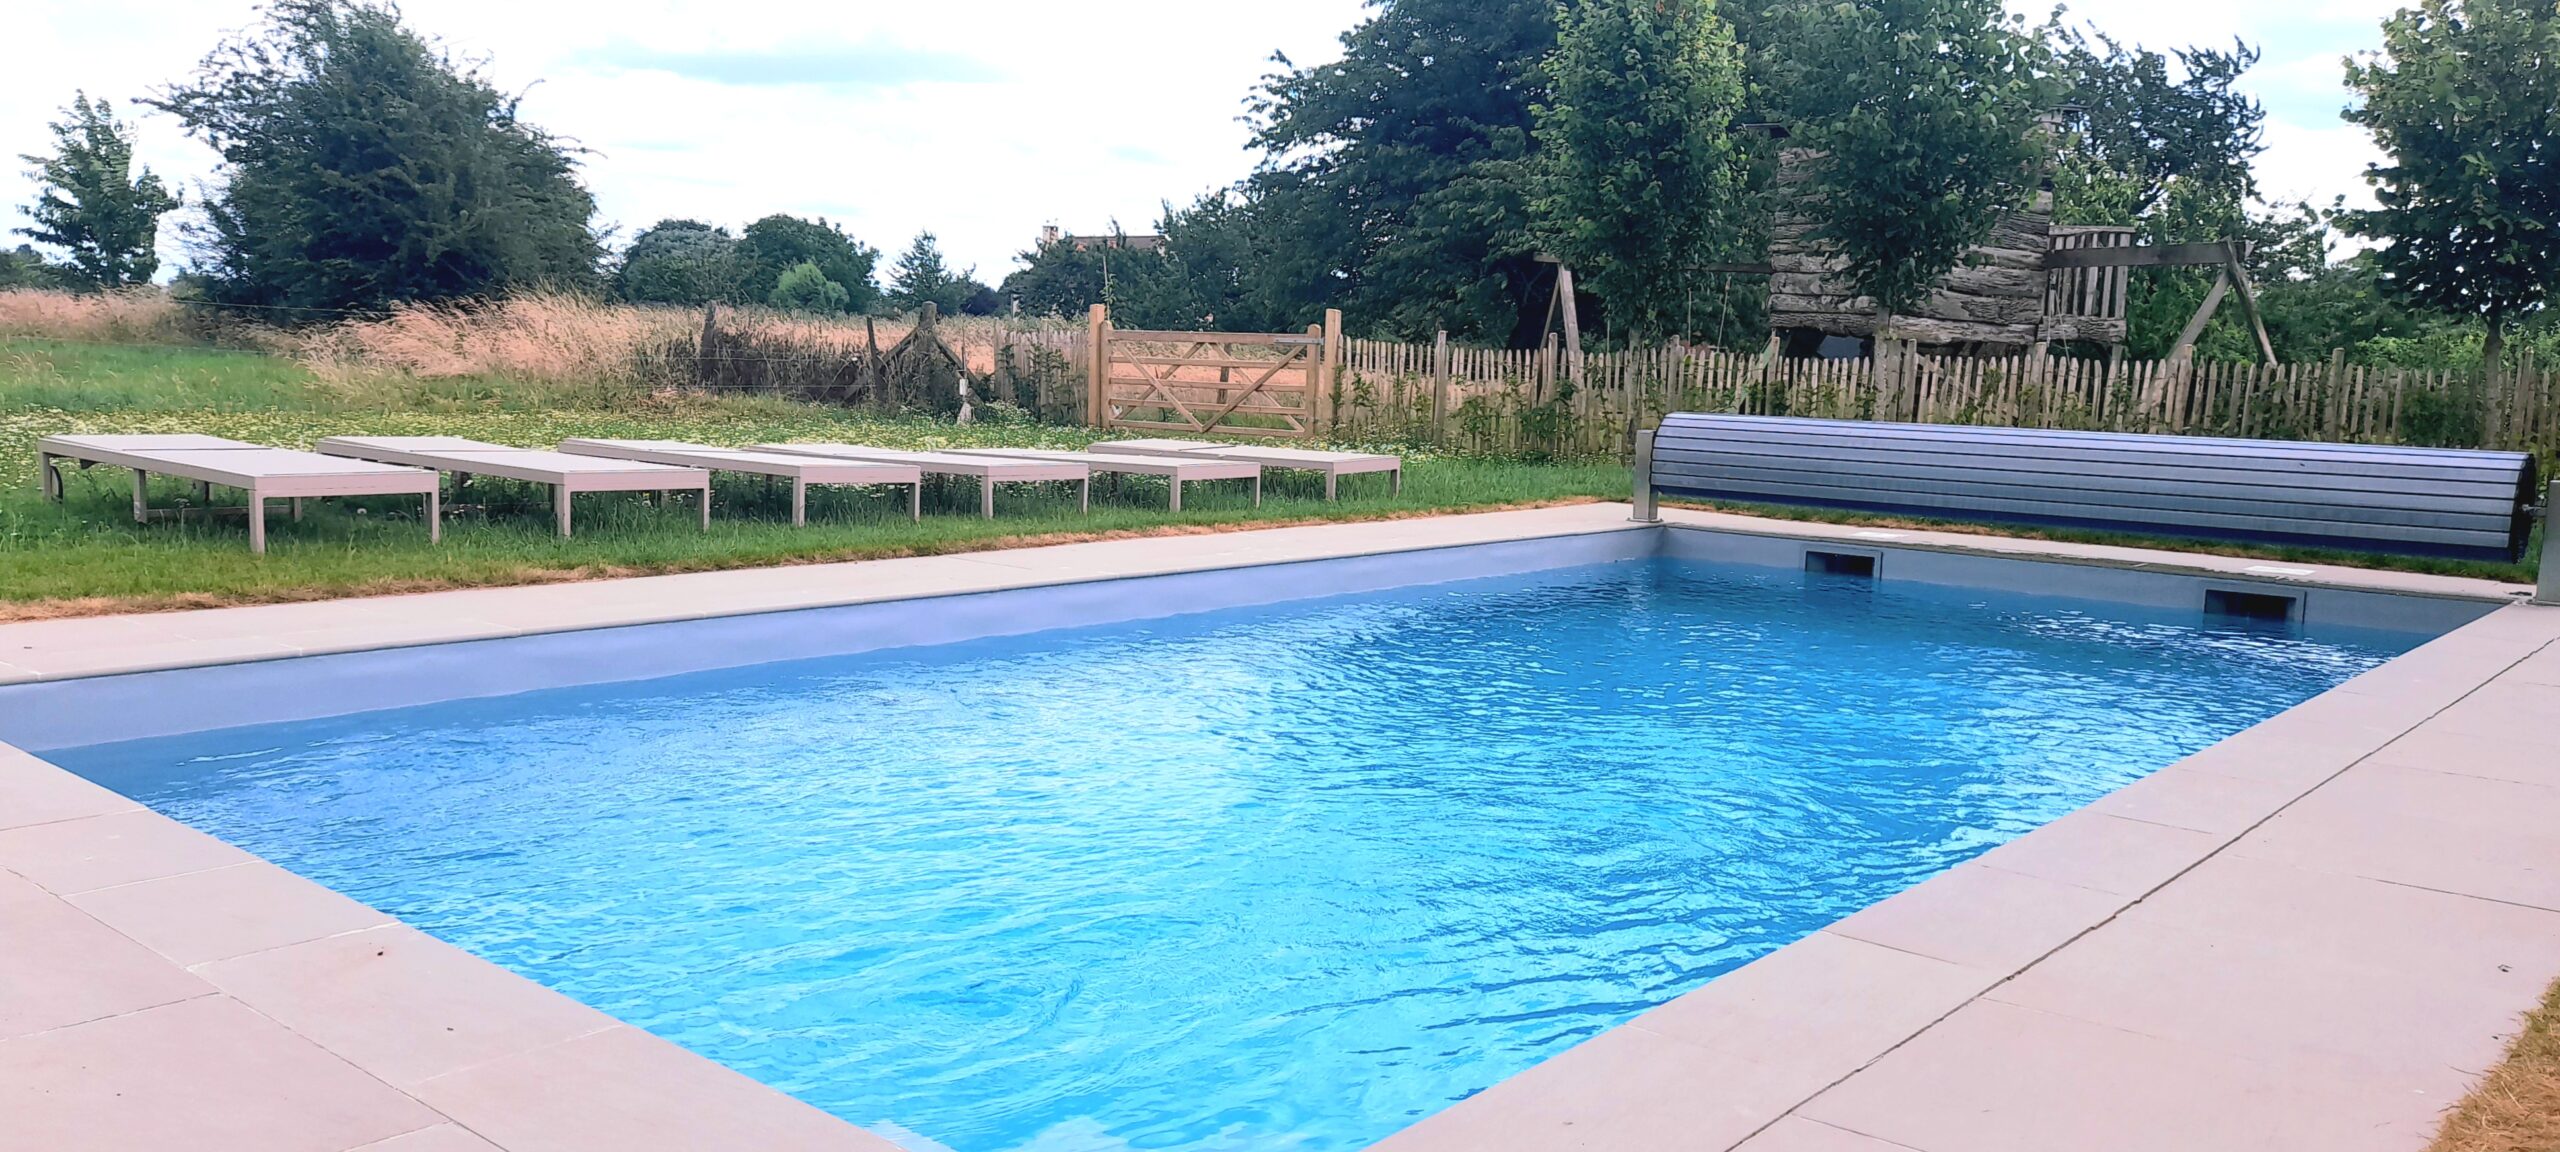 Gites et maisons de vacances à louer à Sambreville La piscine de la Cense de Baudecet 